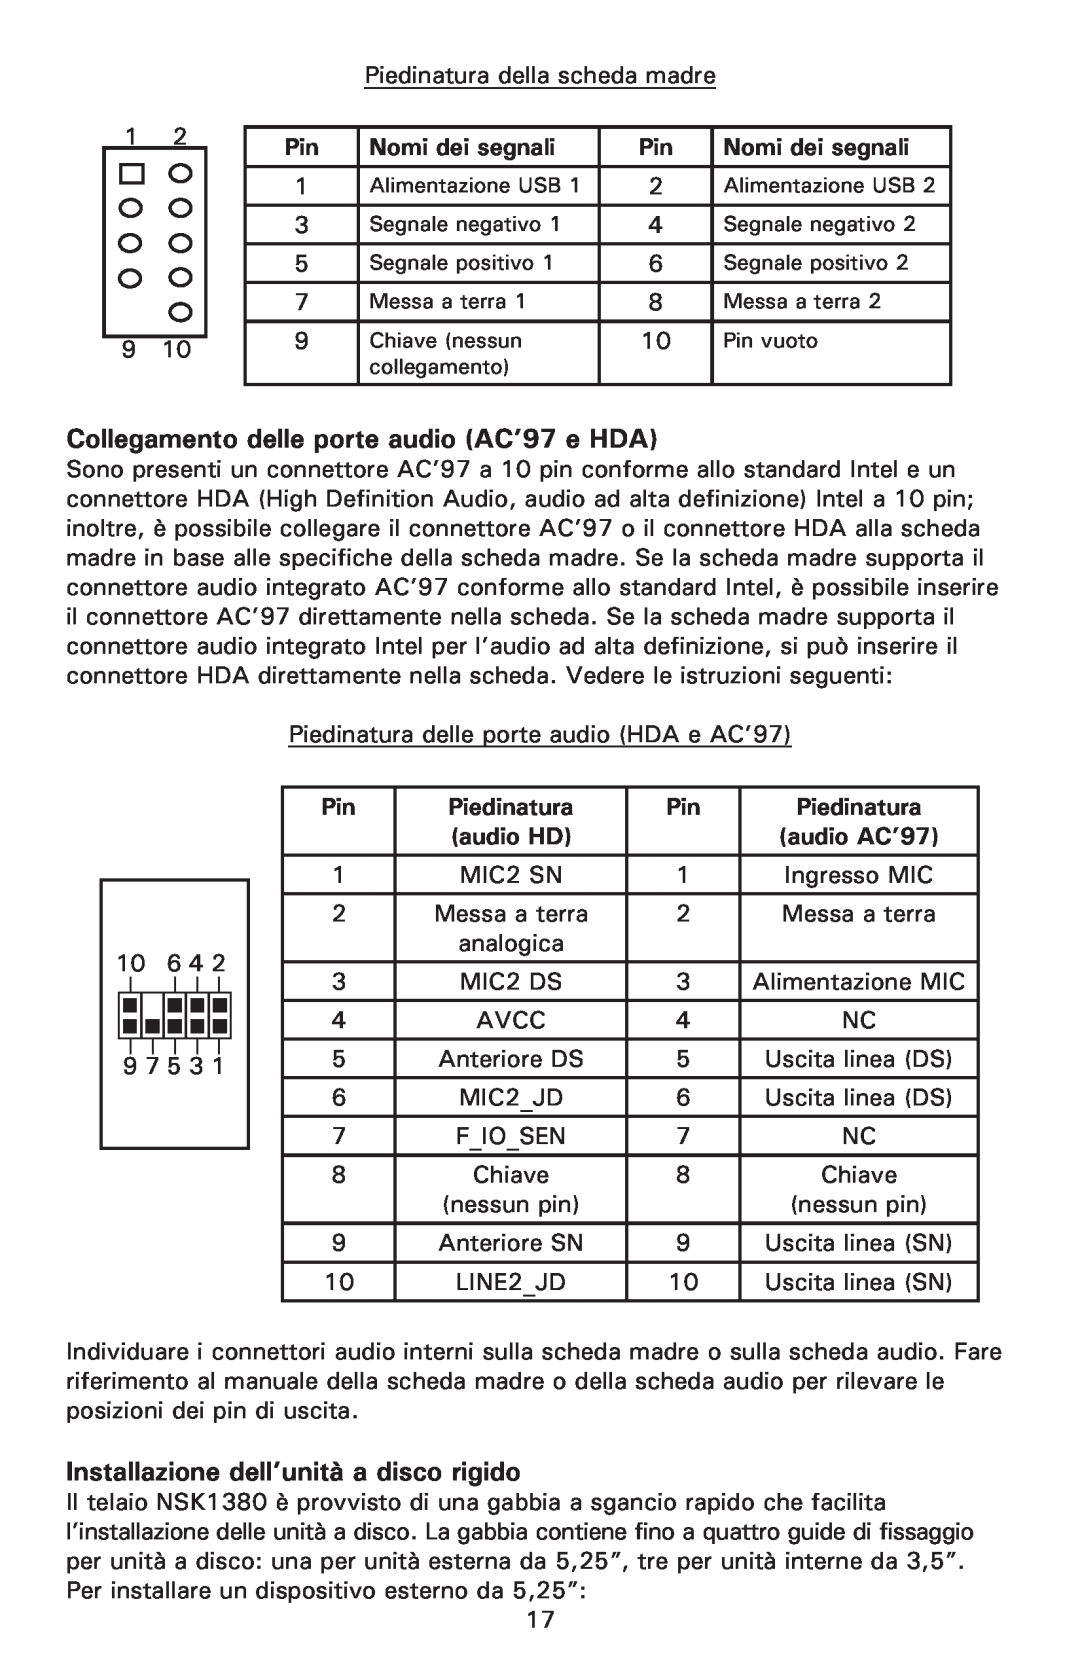 Antec NSK 1380 Collegamento delle porte audio AC’97 e HDA, Installazione dell’unità a disco rigido, Nomi dei segnali 